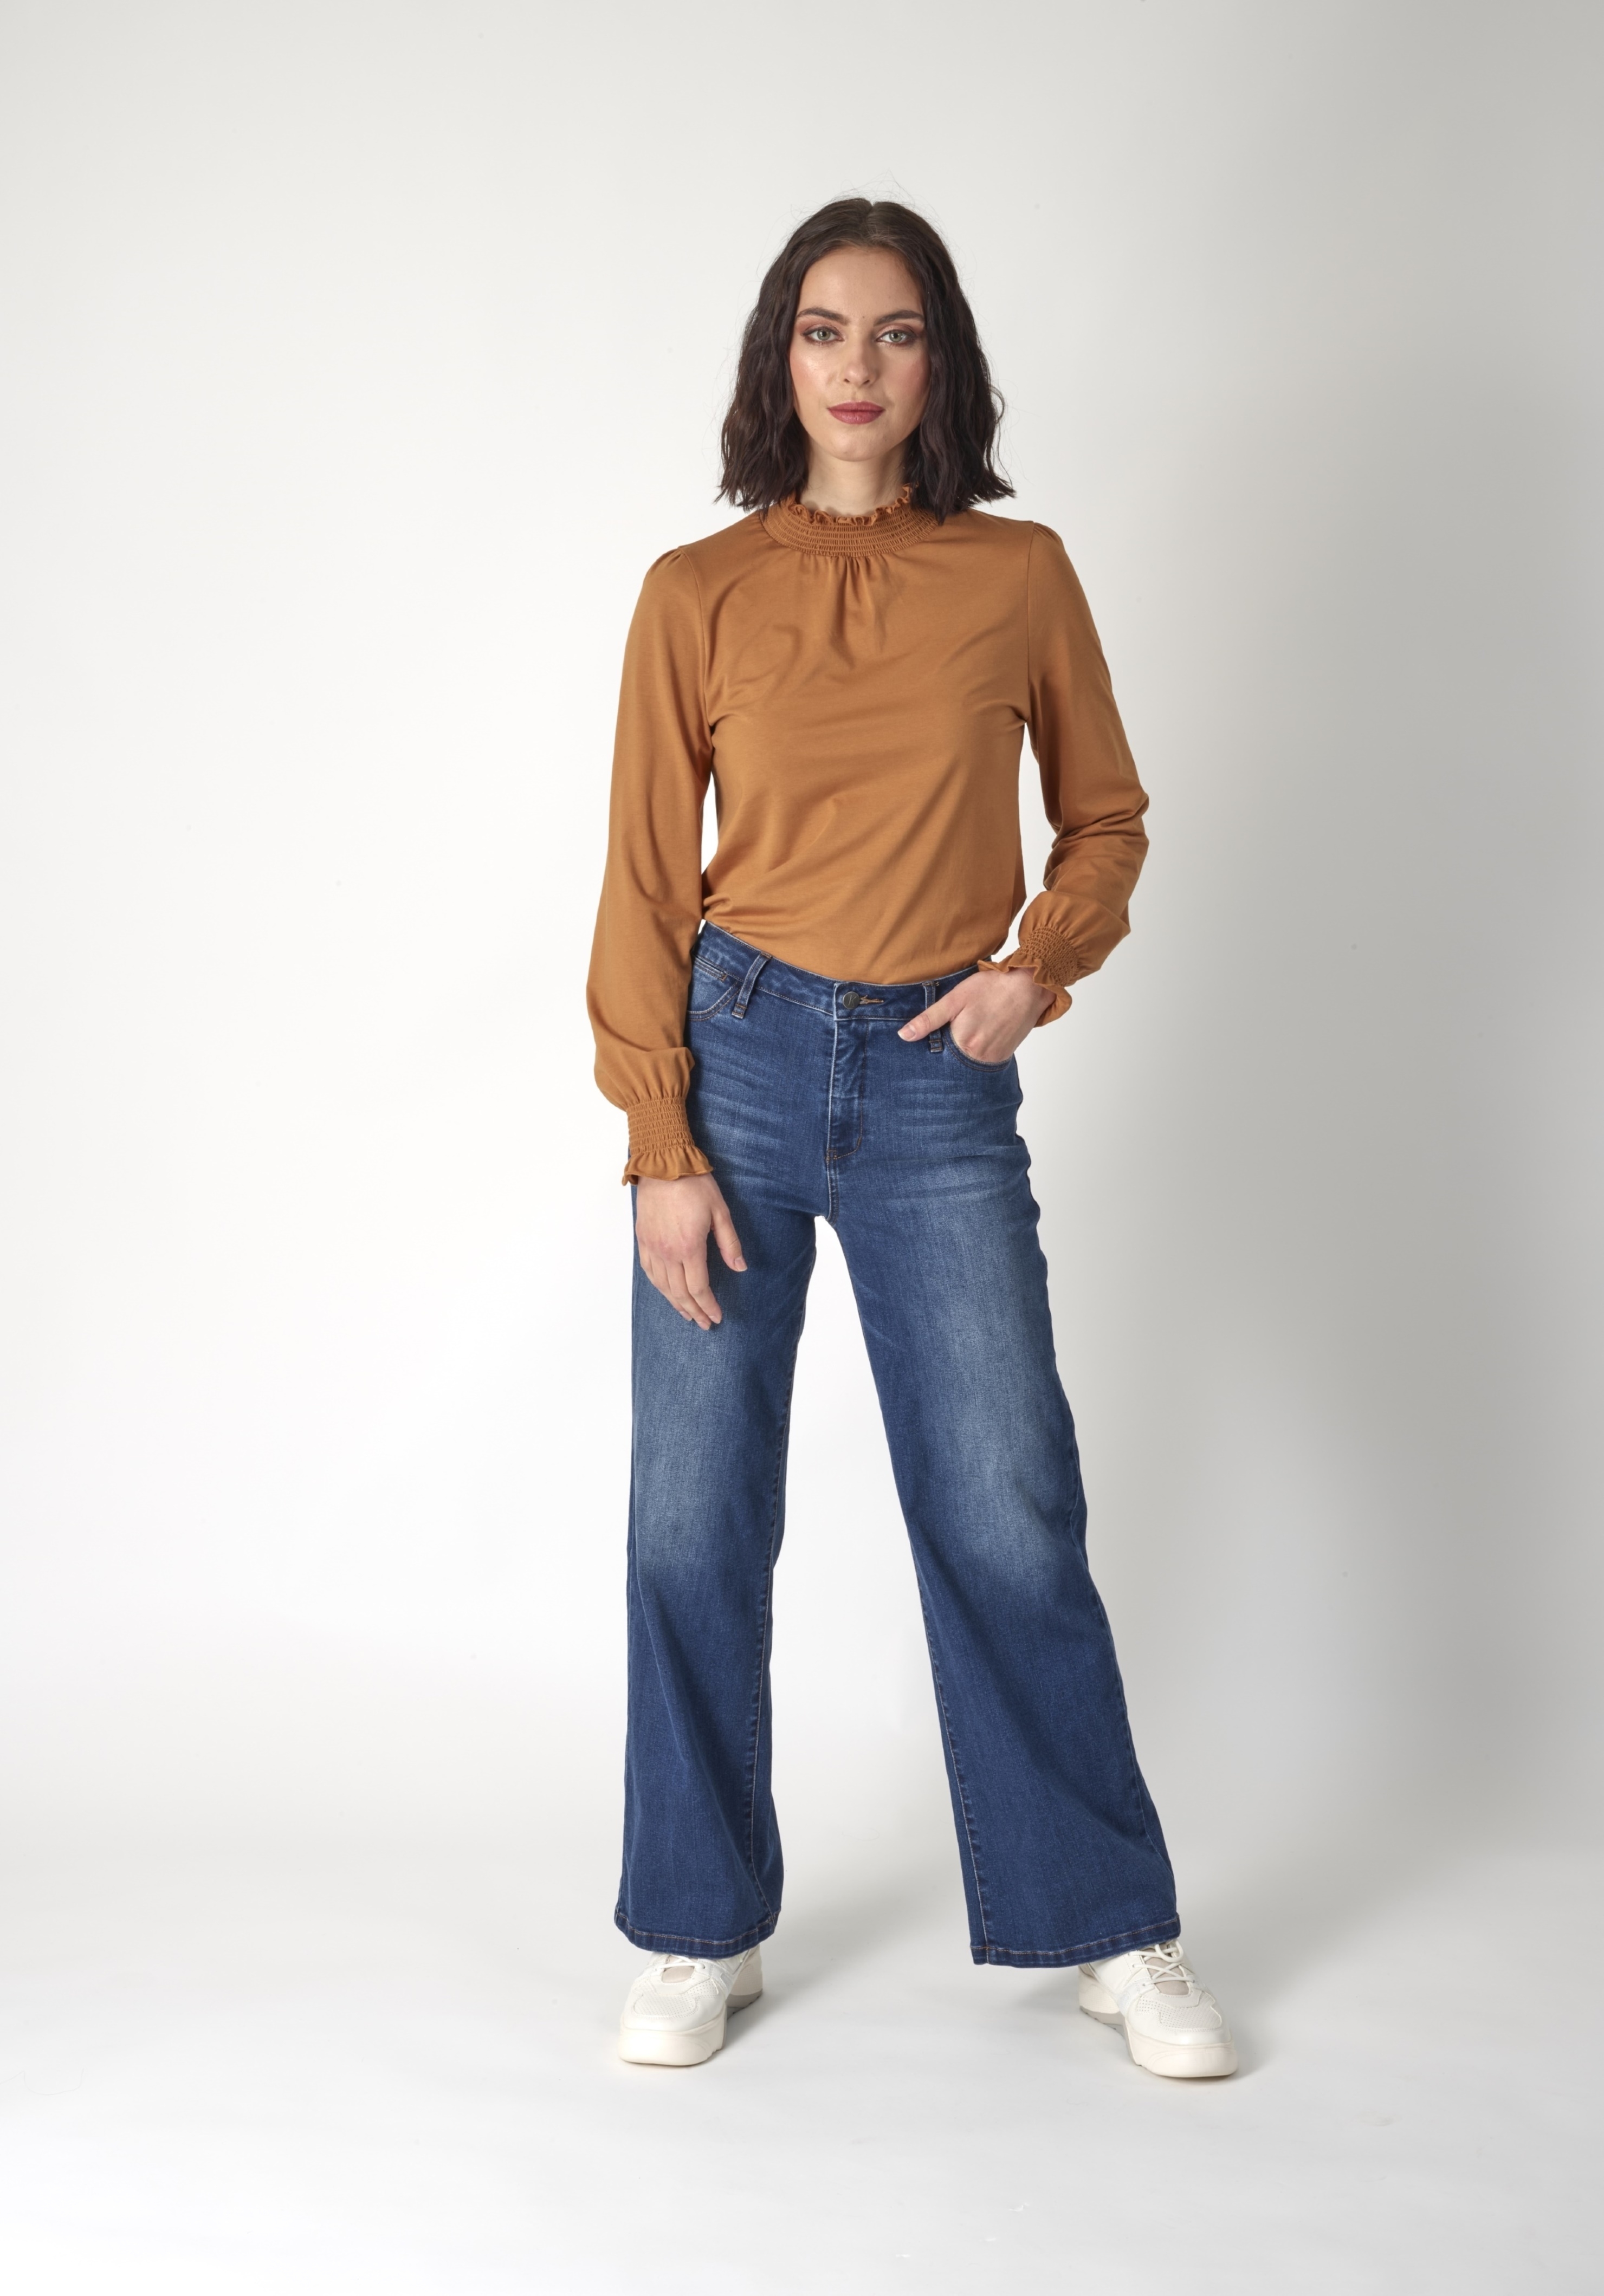 KNEWE ASH JEAN - Jeans : Status Clothing - KNEWE W 22